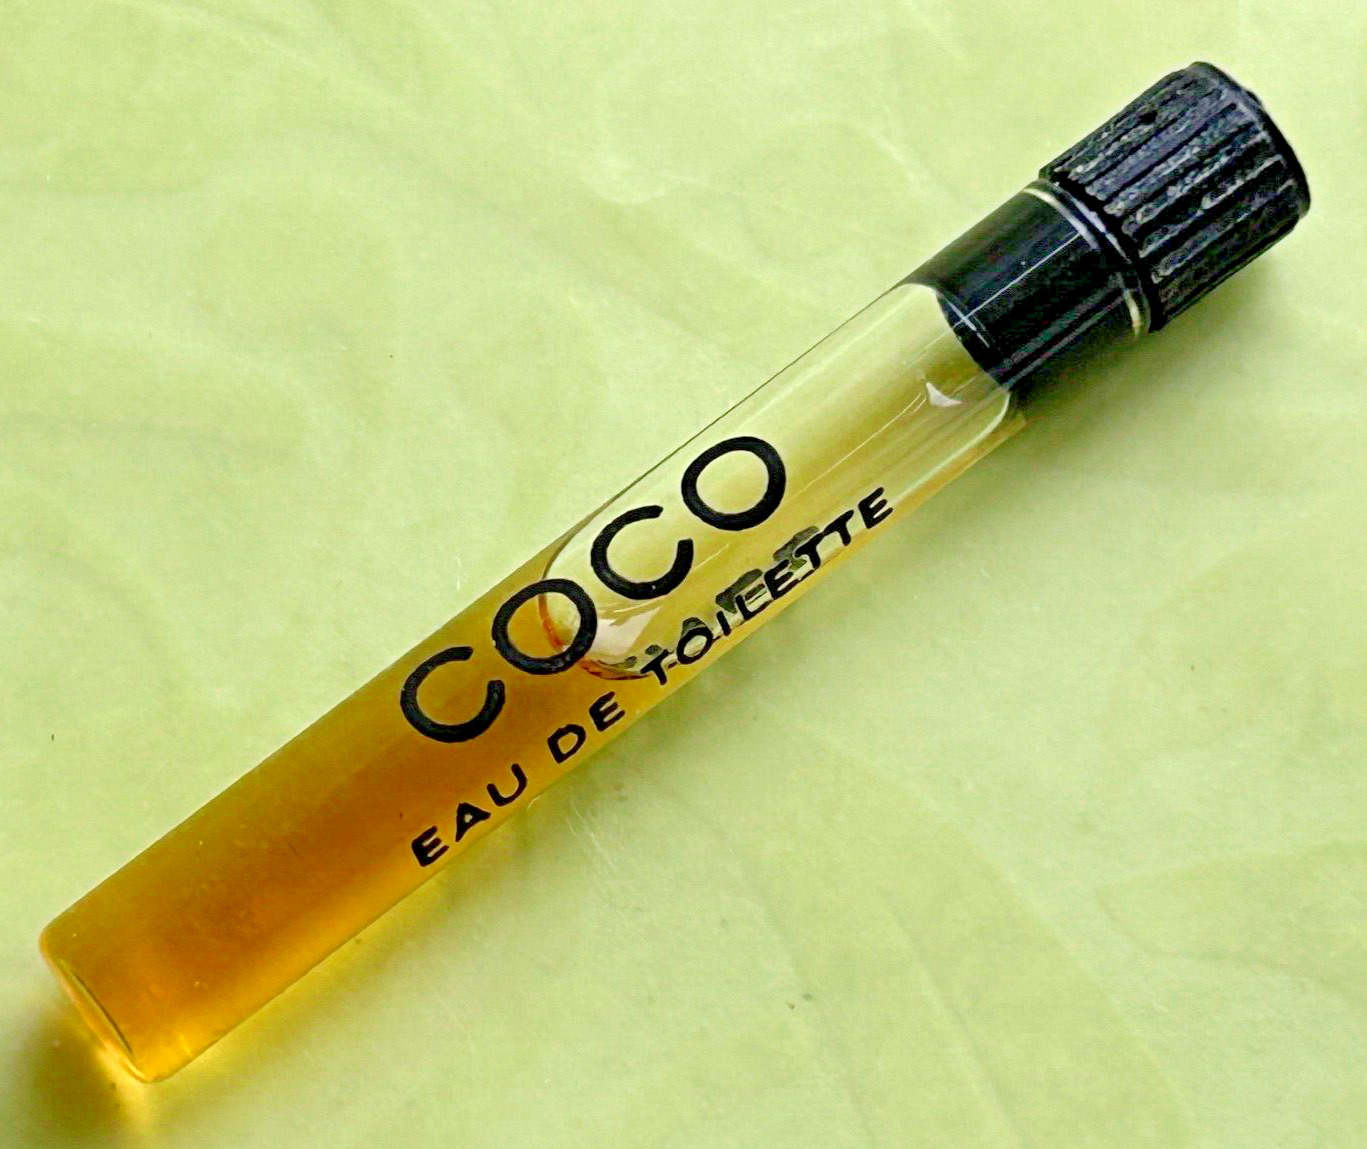 vtg Coco Chanel Eau de Toilette SAMPLE SIZE glass parfum bottle perfume edt mini